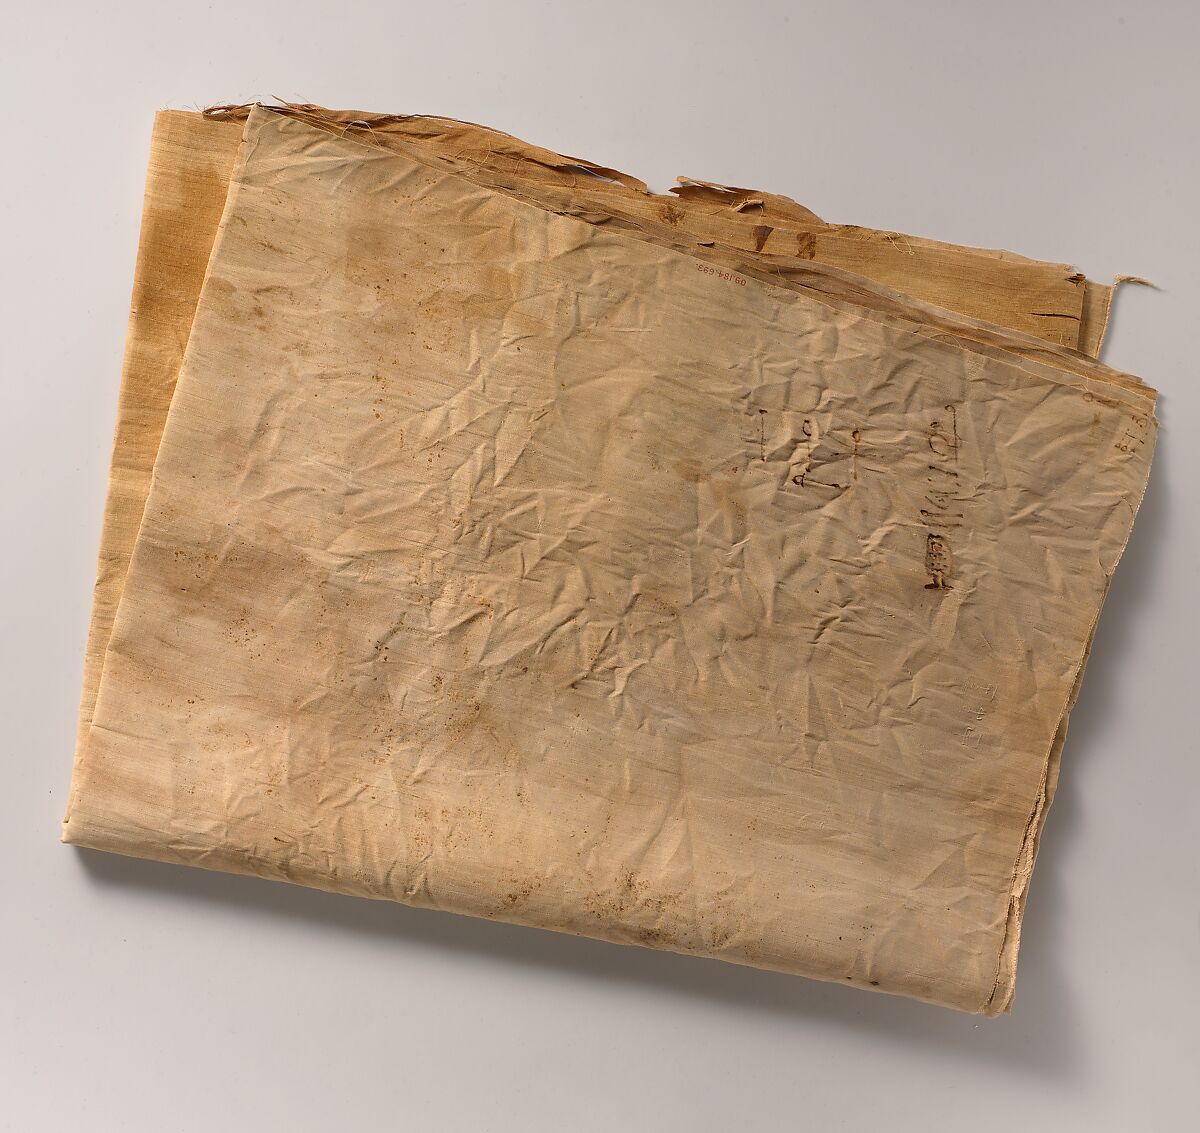 Inscribed Linen Sheet from Tutankhamun's Embalming Cache, Linen 